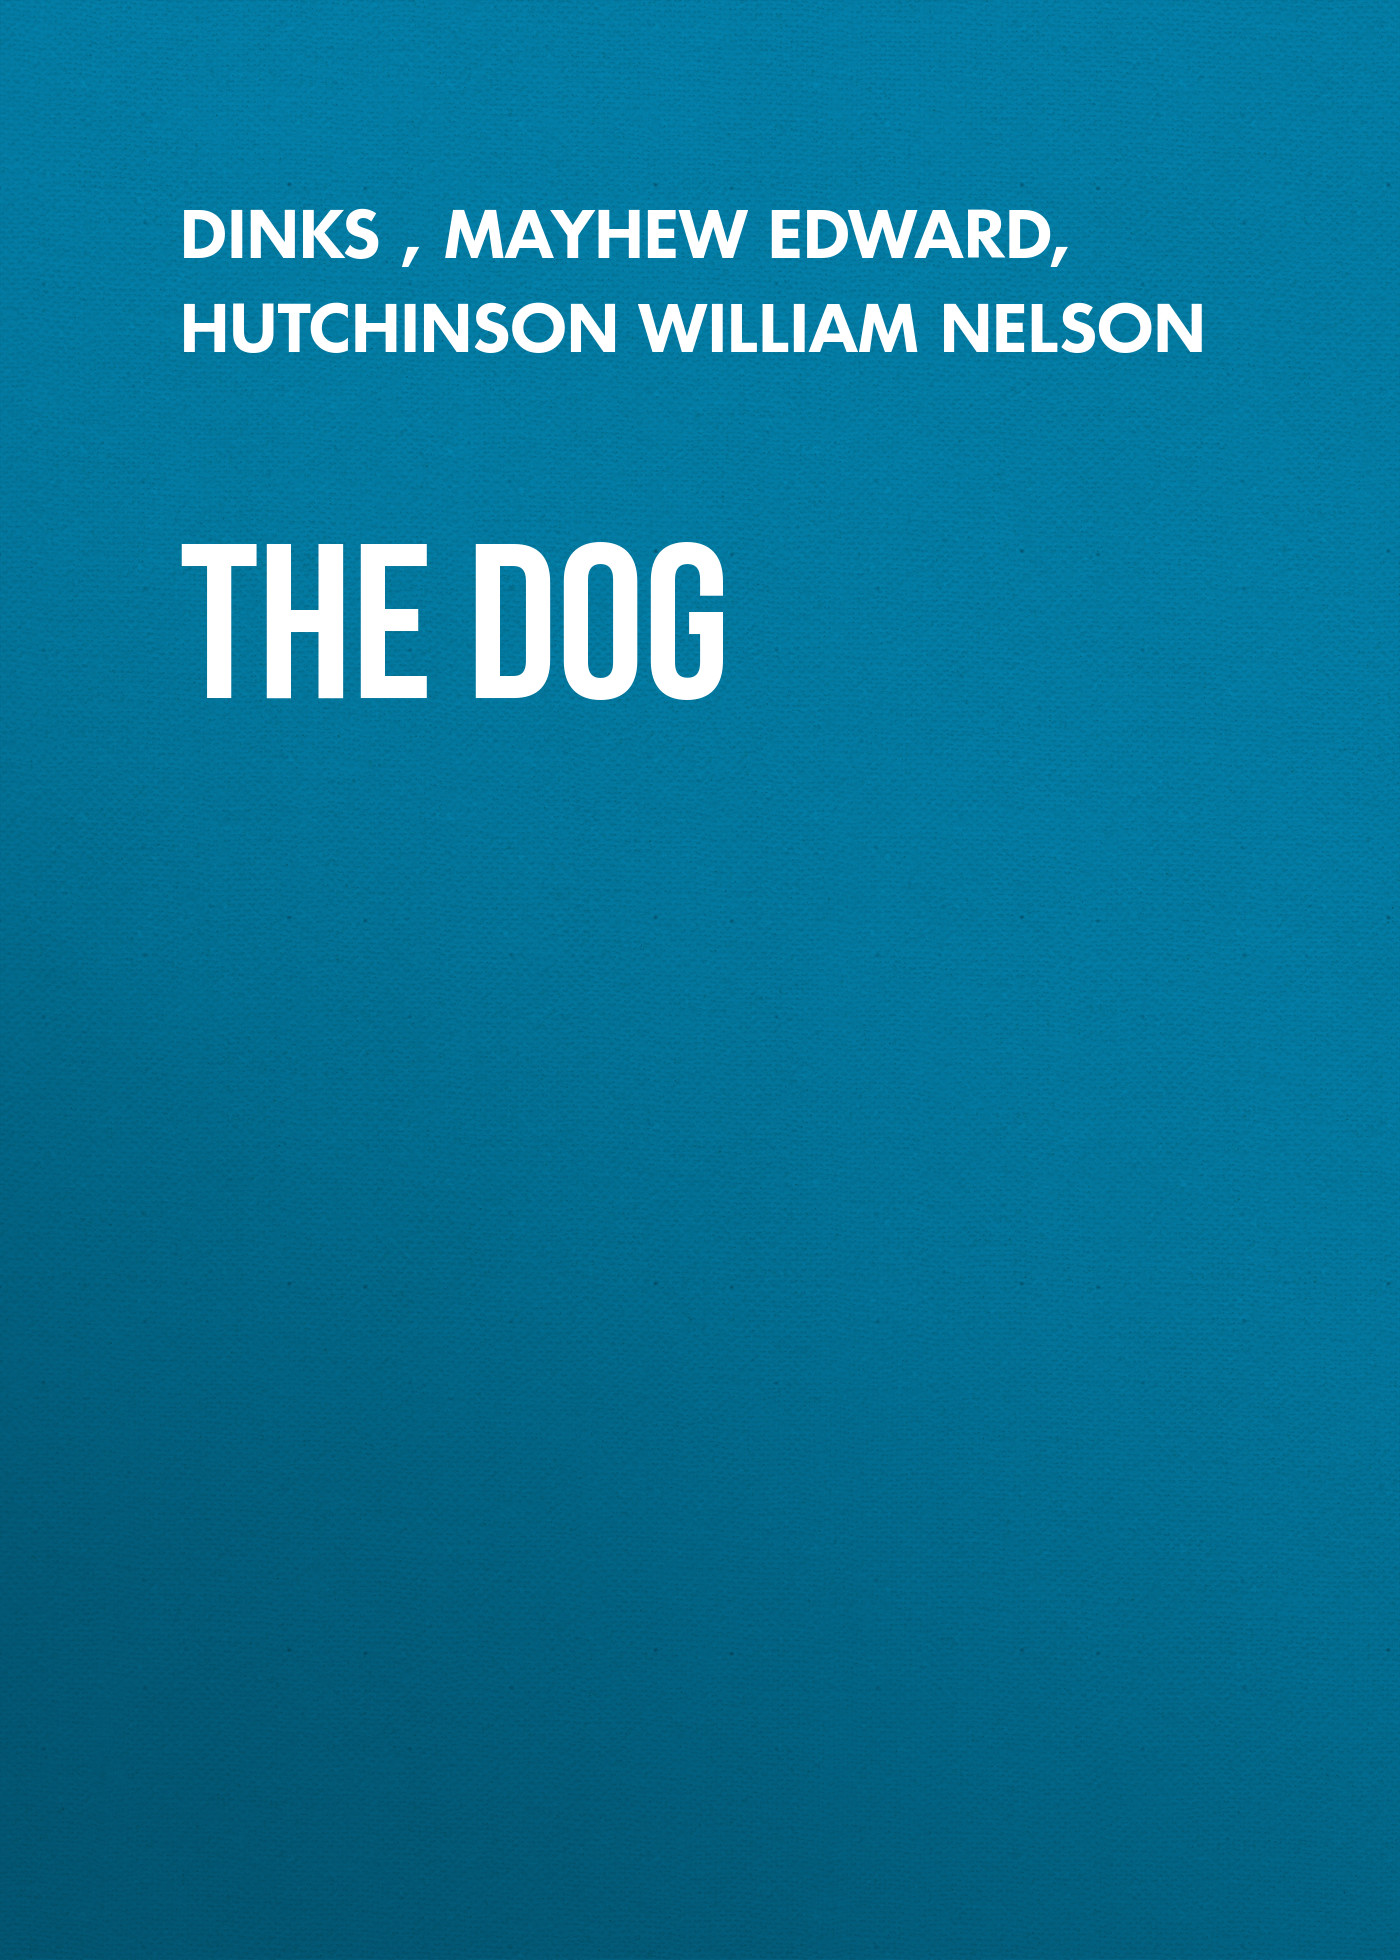 Книга The Dog из серии , созданная  Dinks, William Hutchinson, Edward Mayhew, может относится к жанру Домашние Животные, Зарубежная старинная литература, Зарубежная классика. Стоимость книги The Dog  с идентификатором 24620829 составляет 0 руб.